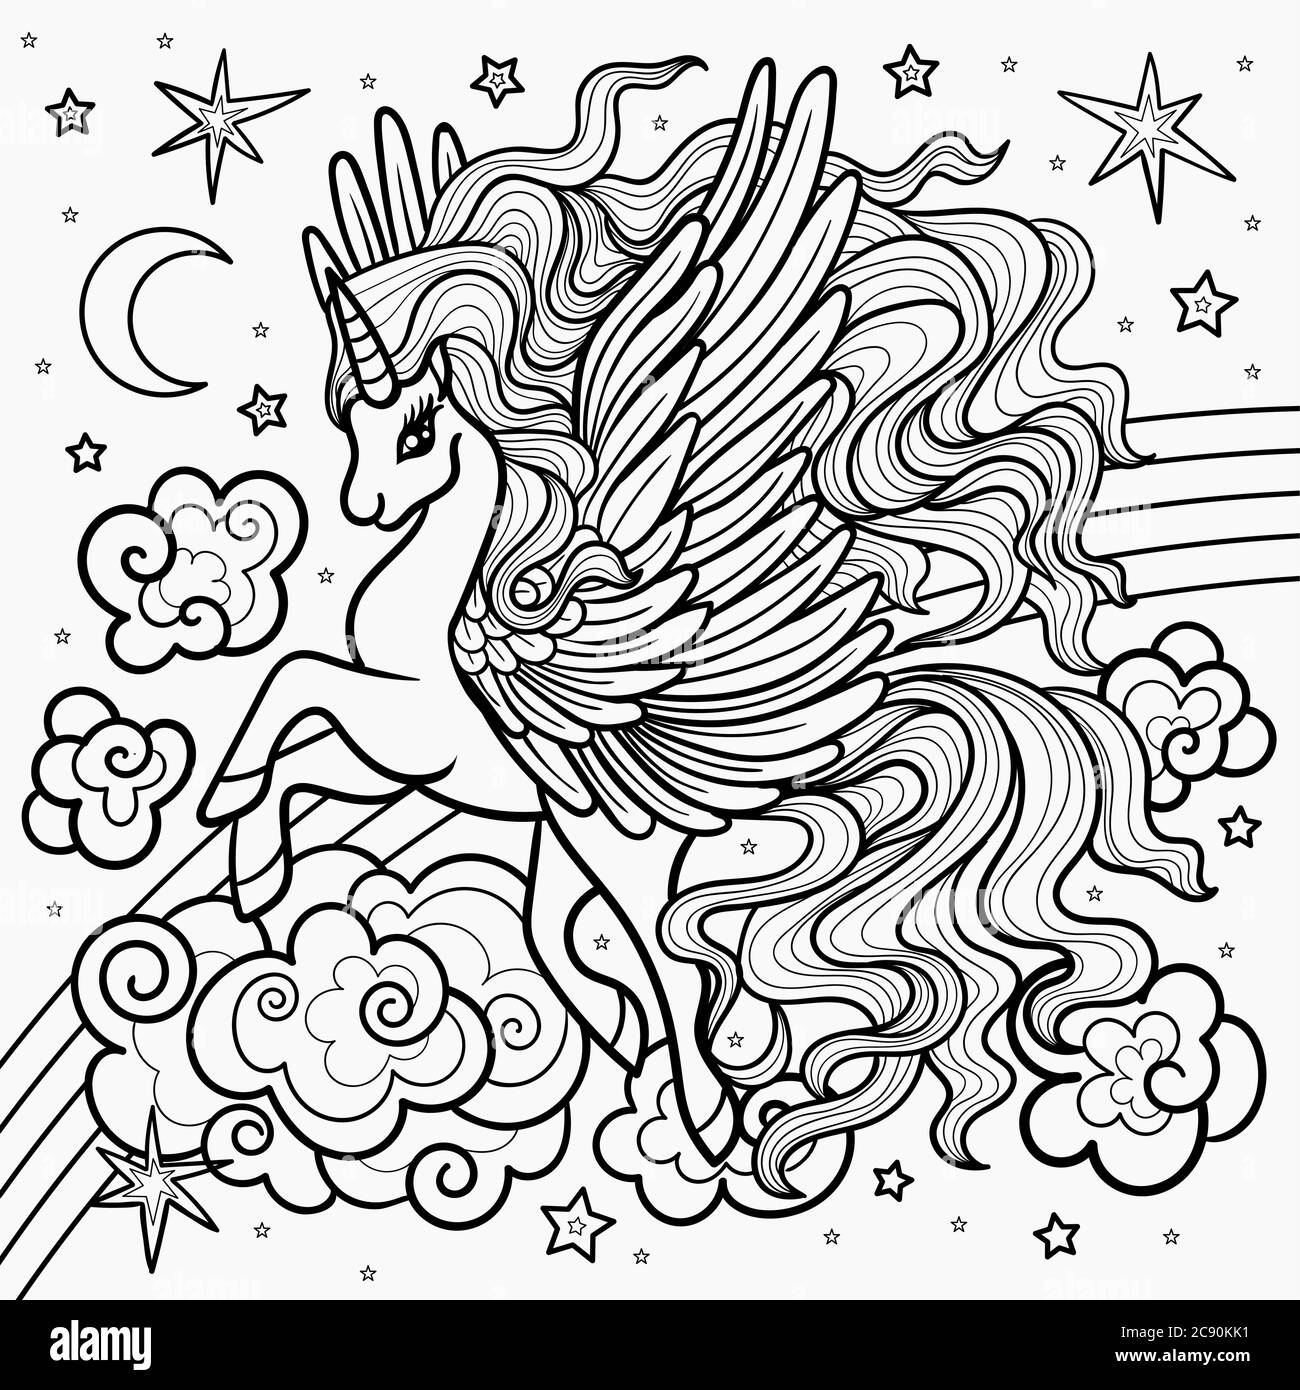 Bella, alata unicorno su un arcobaleno. Illustrazione in bianco e nero per la colorazione. Per la progettazione di stampe, poster, tatuaggi, ecc. Vector Illustrazione Vettoriale